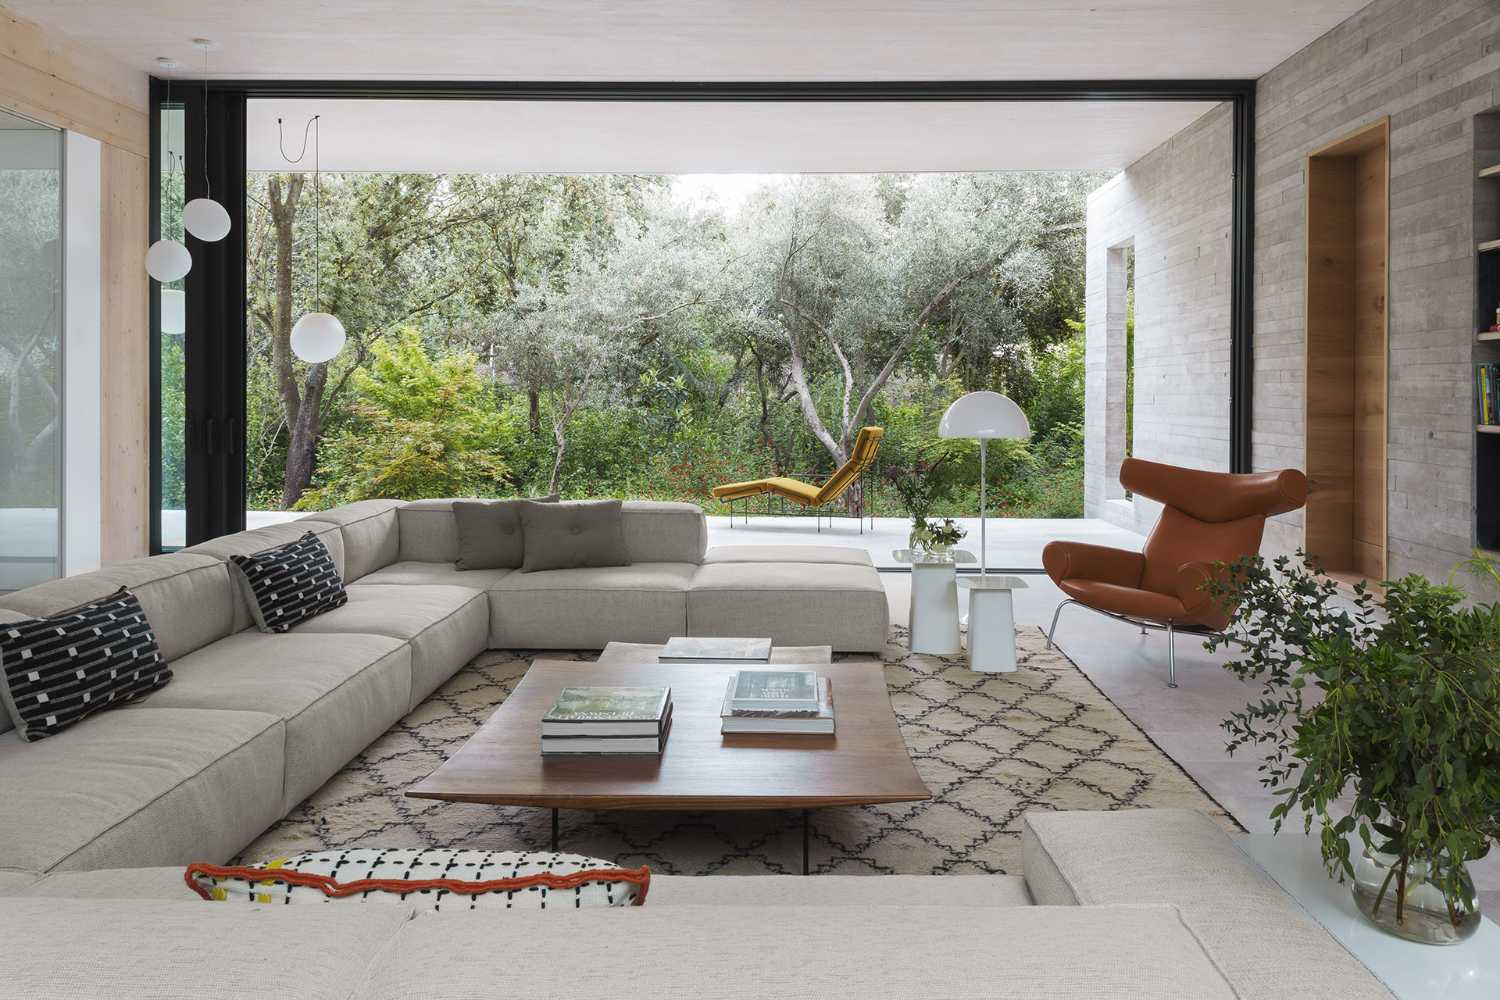 Progetto CH, une résidence privée entrelacée avec des intérieurs confortables et des espaces extérieurs verdoyants